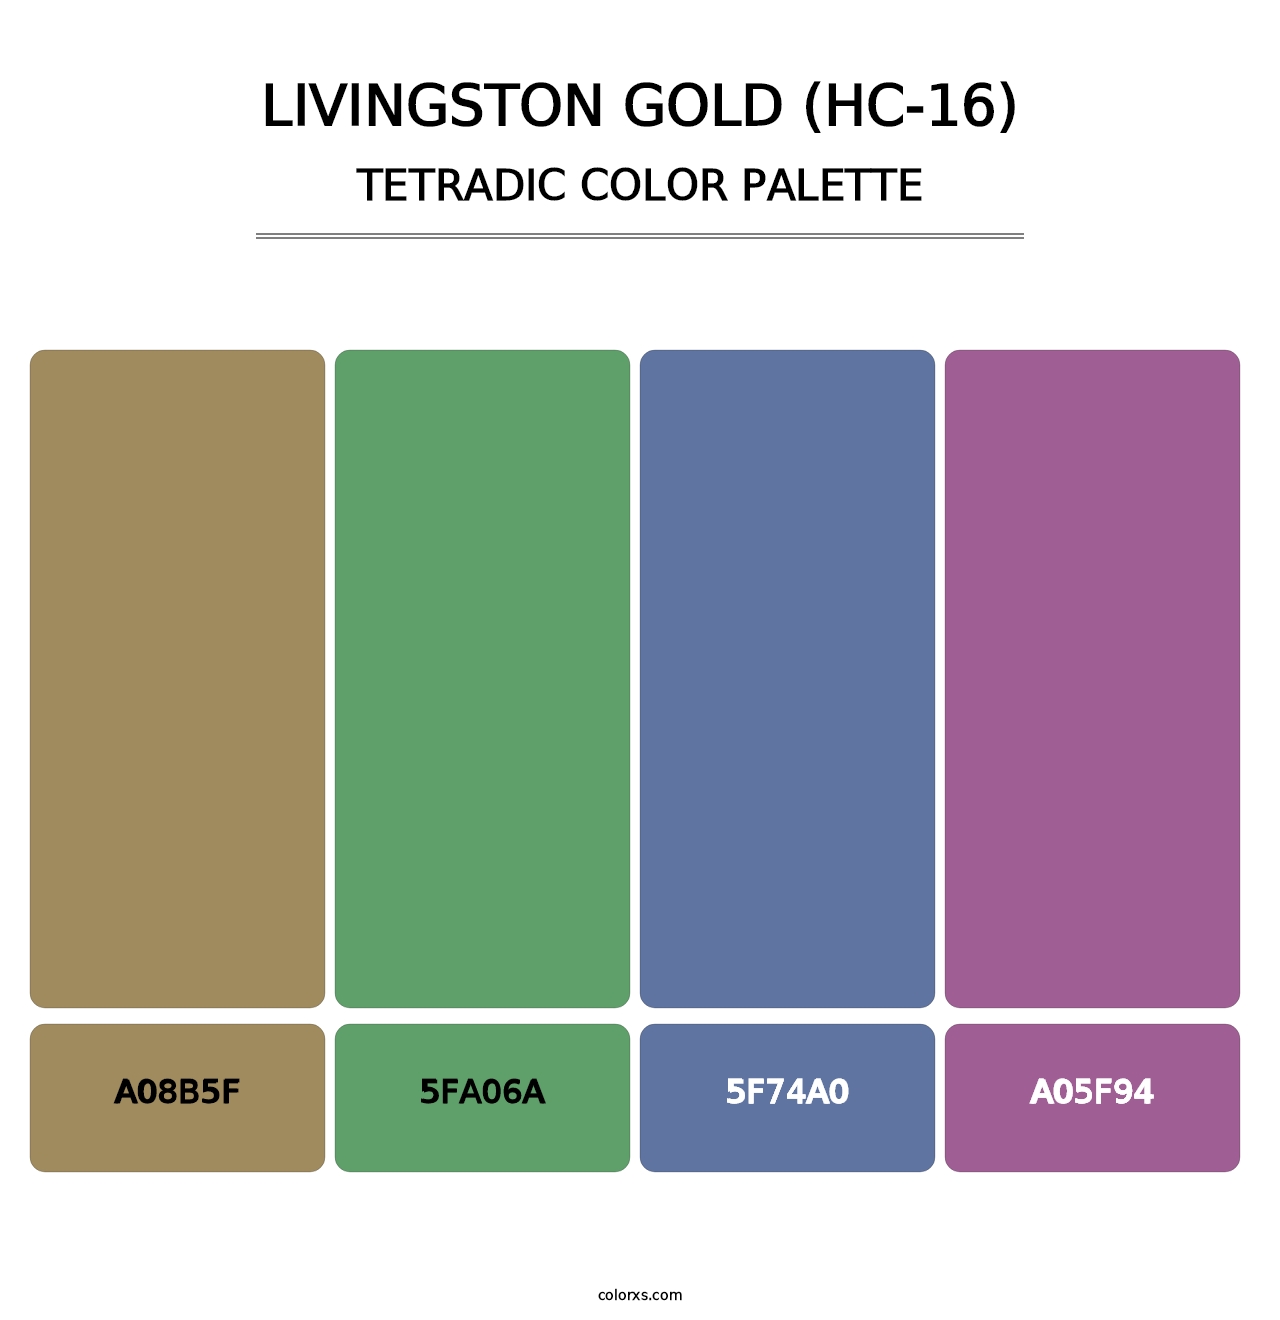 Livingston Gold (HC-16) - Tetradic Color Palette